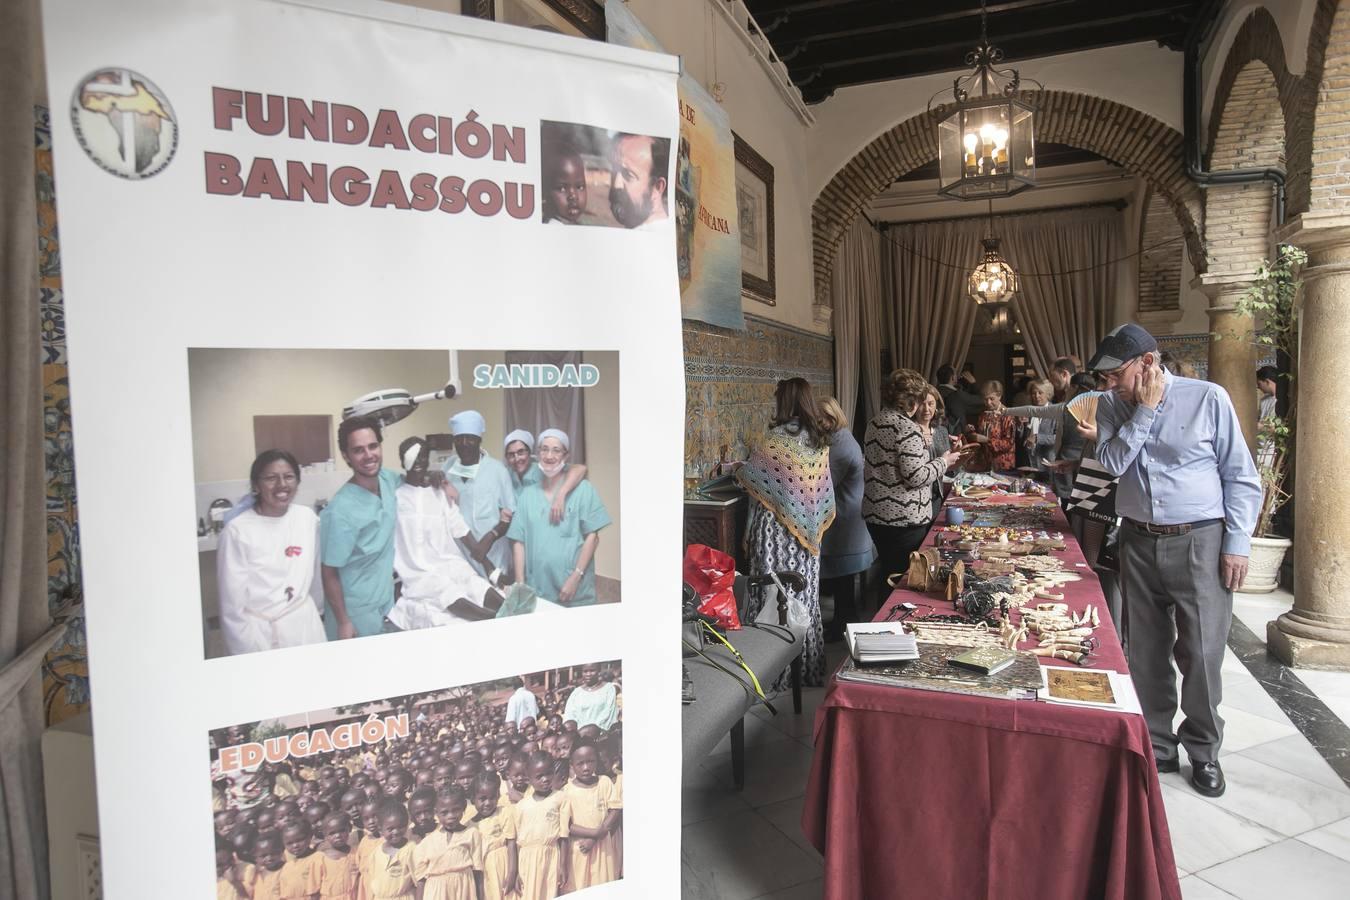 Casi mil personas apoyan en el Círculo de la Amistad de Córdoba la labor del obispo Aguirre en Bangassou